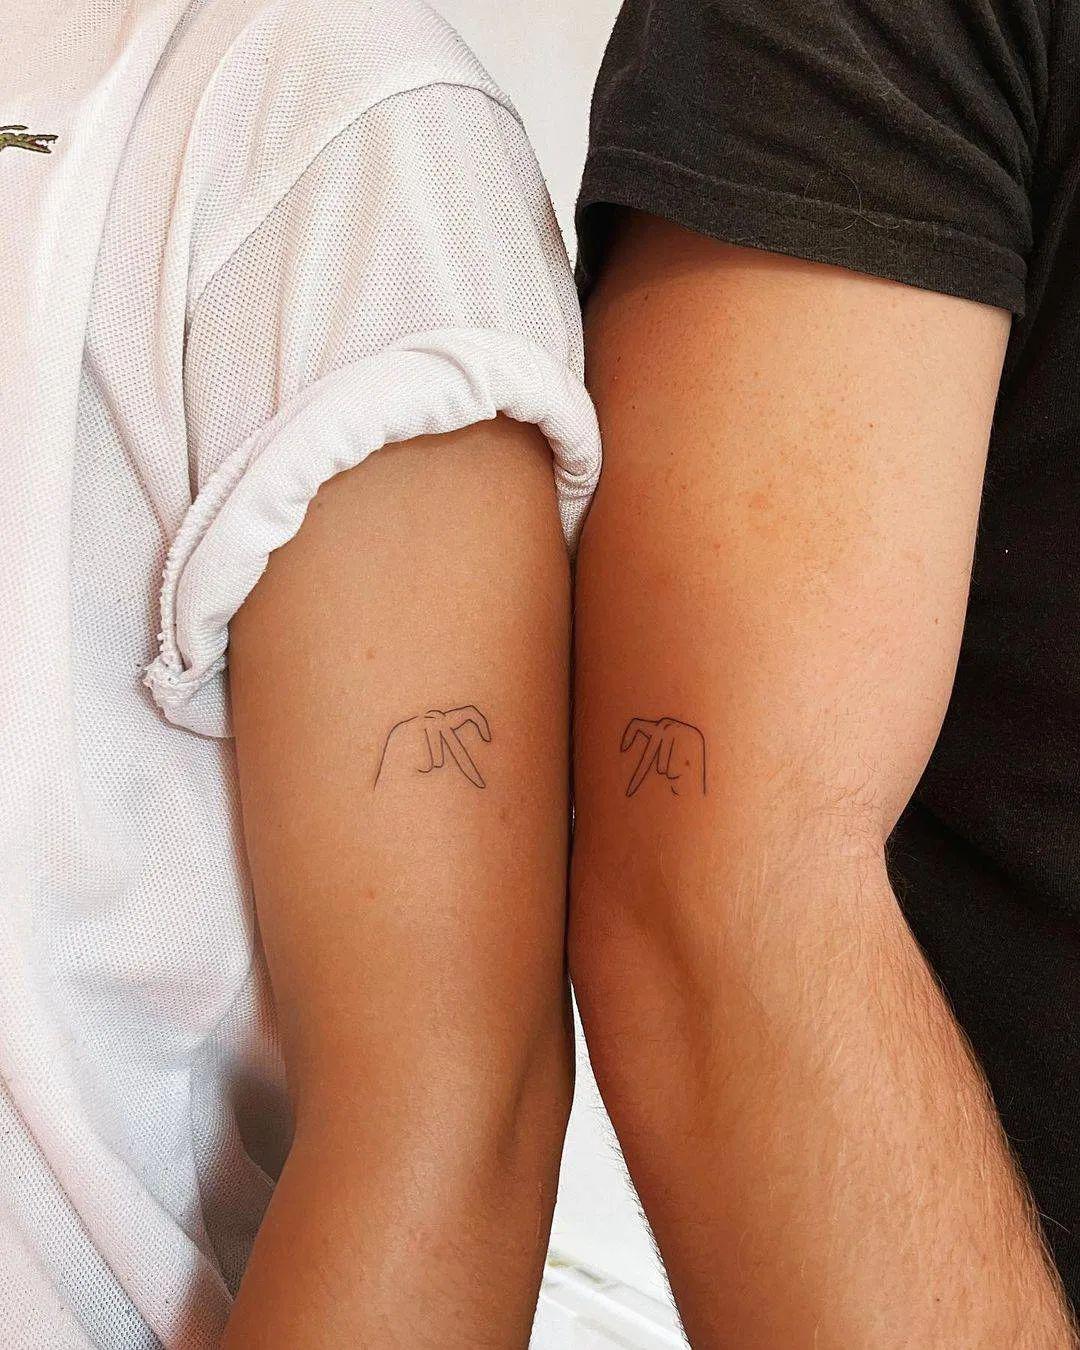 Tatuajes para parejas discretos: manos